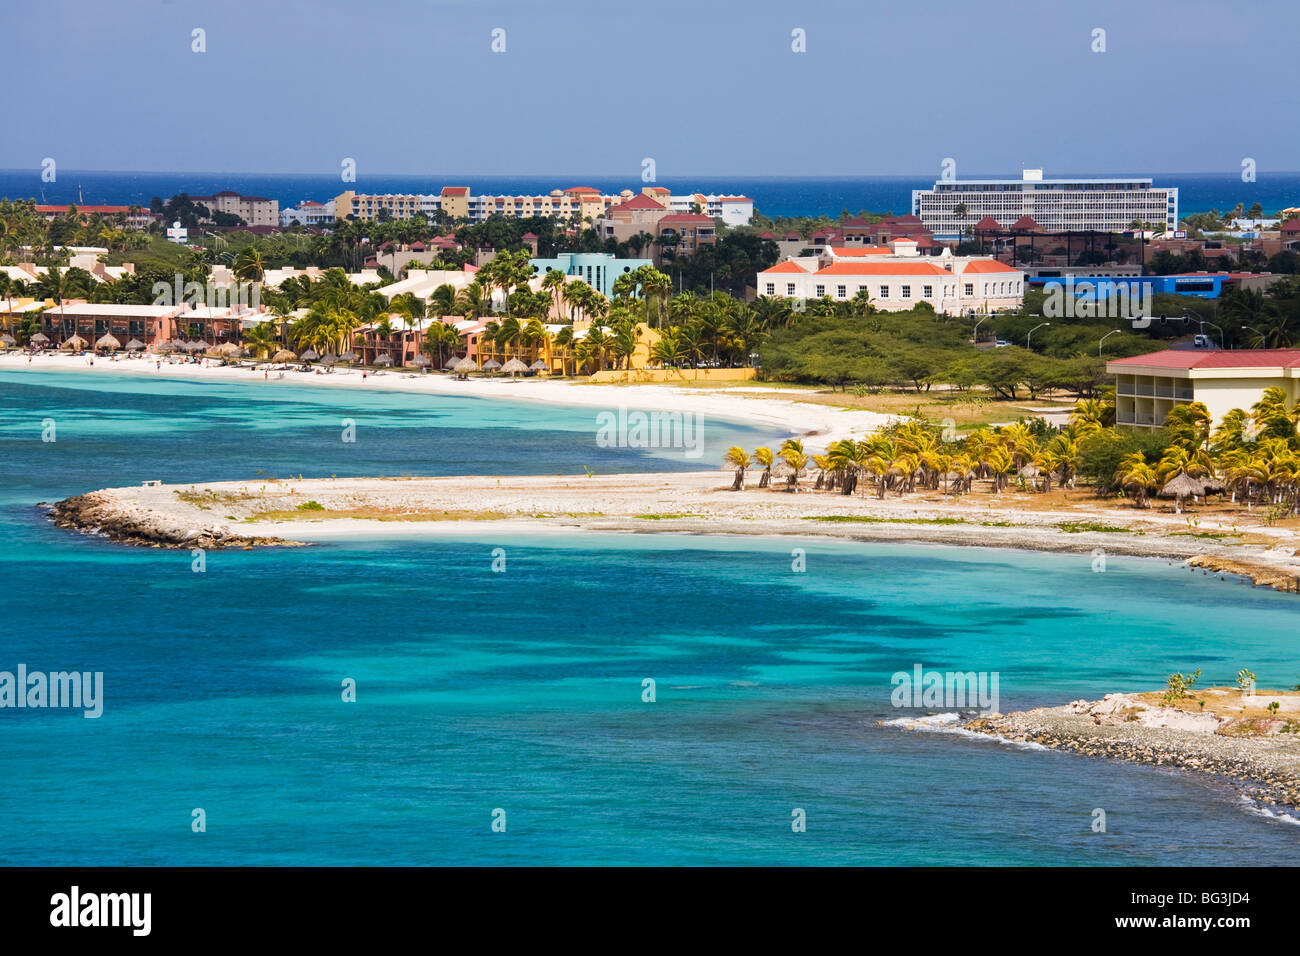 Ville Oranjestad, Aruba et le littoral, Antilles, Caraïbes, Amérique Centrale Banque D'Images